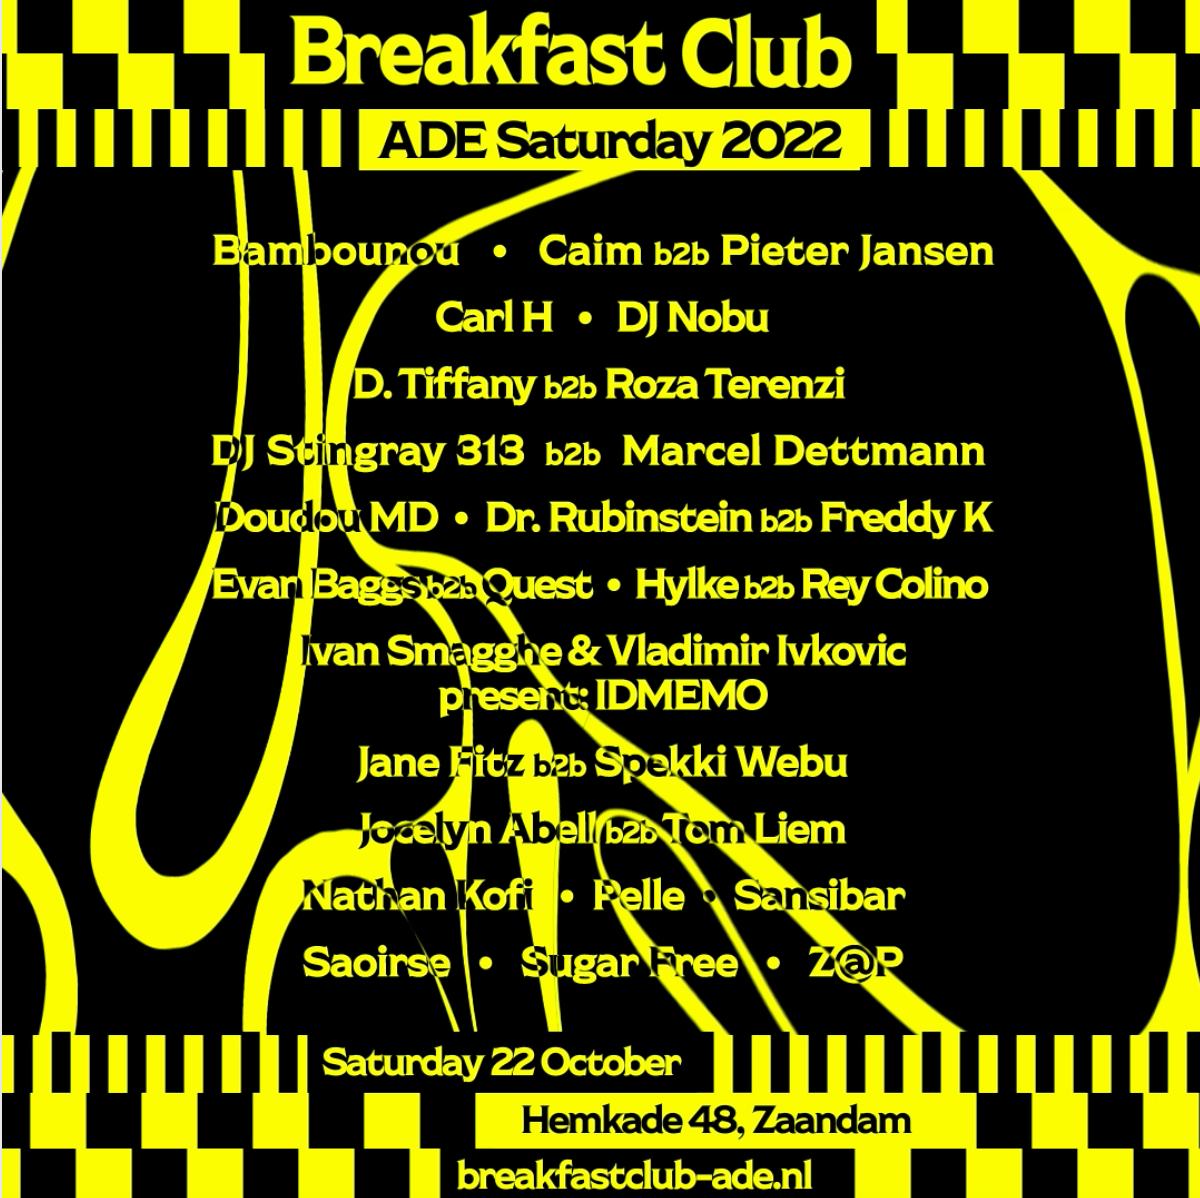 Breakfast Club ADE Saturday - Página frontal